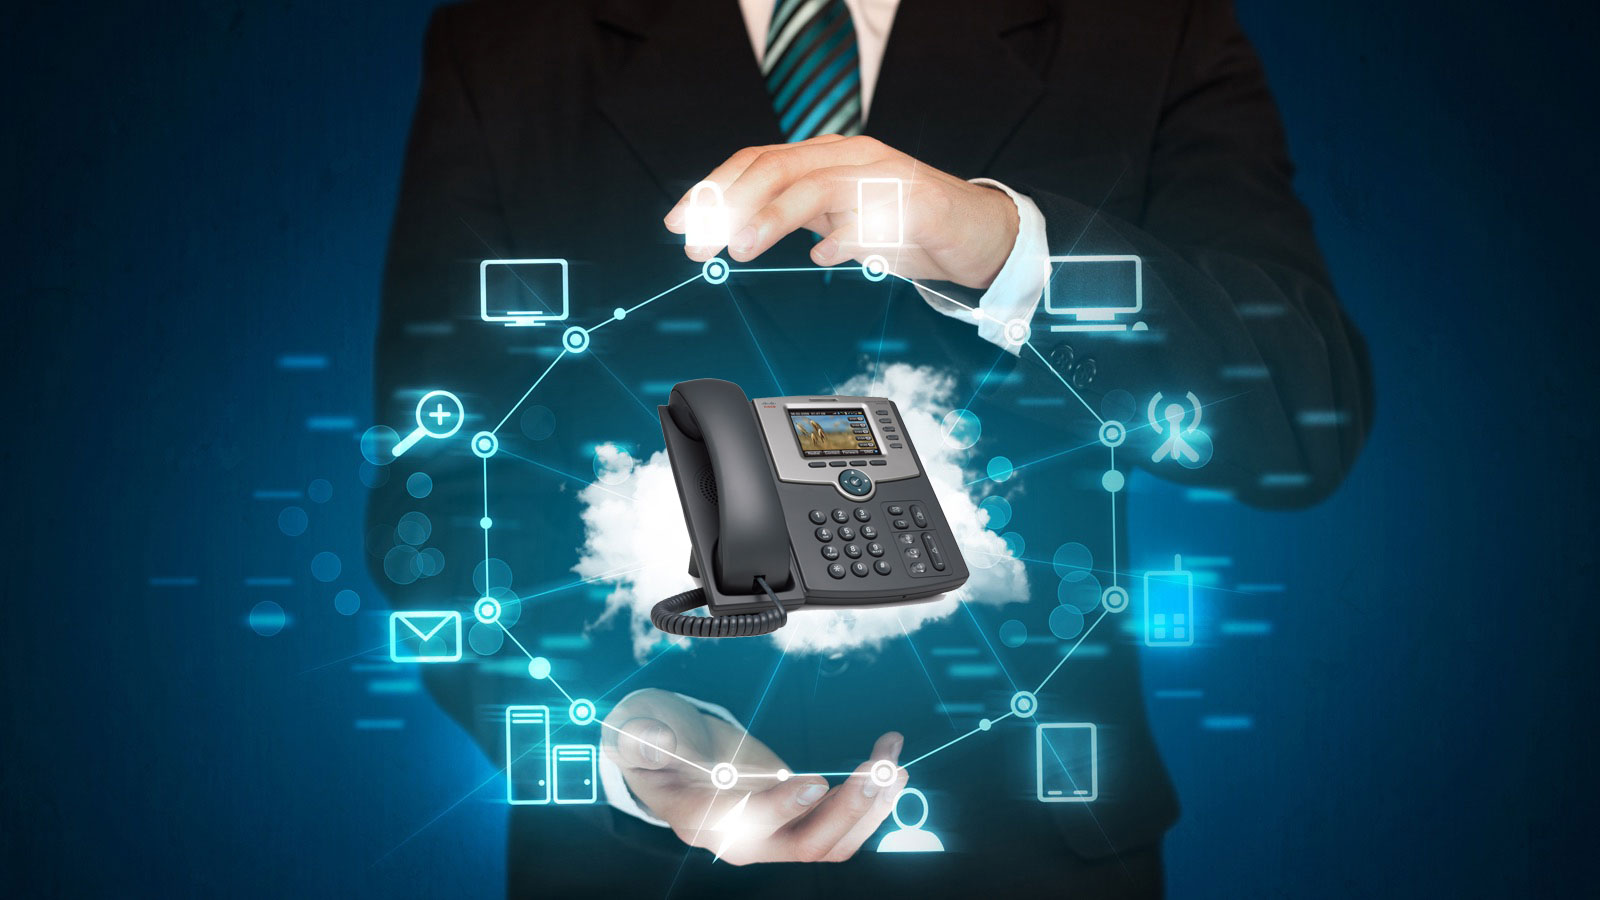 Key VoIP Features That Large Enterprises Should Consider